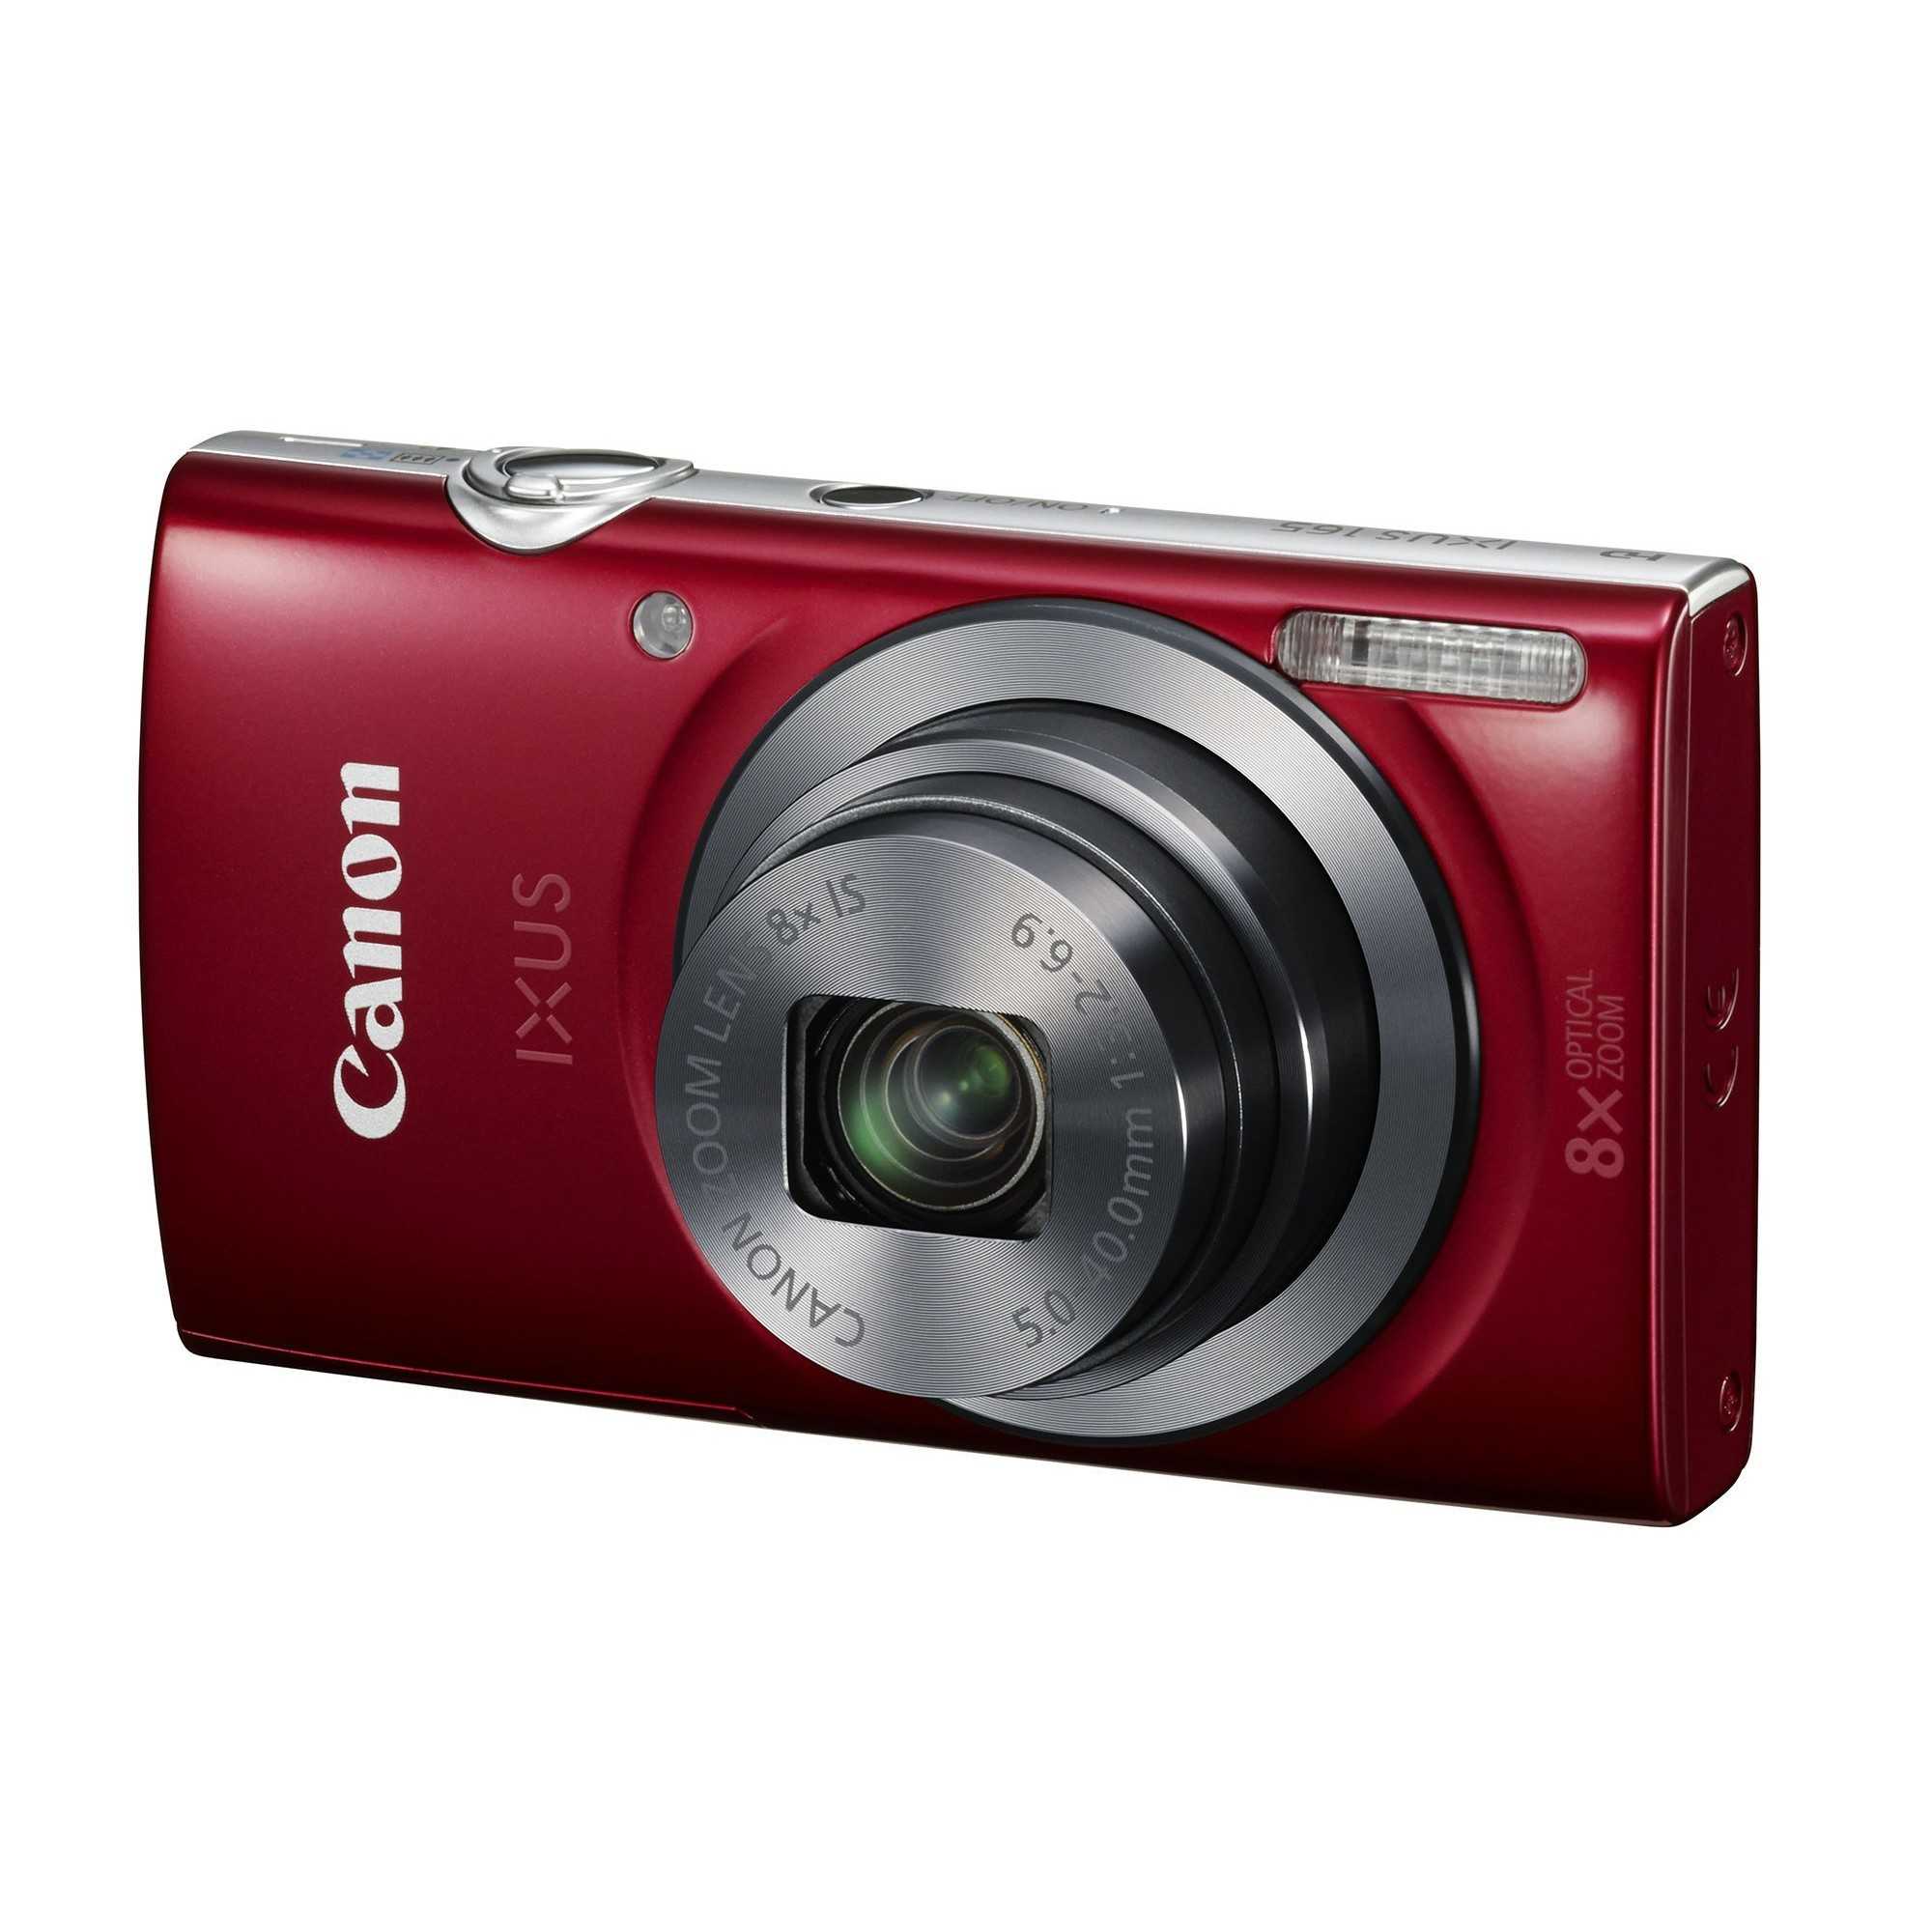 Фотоаппарат canon digital ixus 110 is gold — купить, цена и характеристики, отзывы